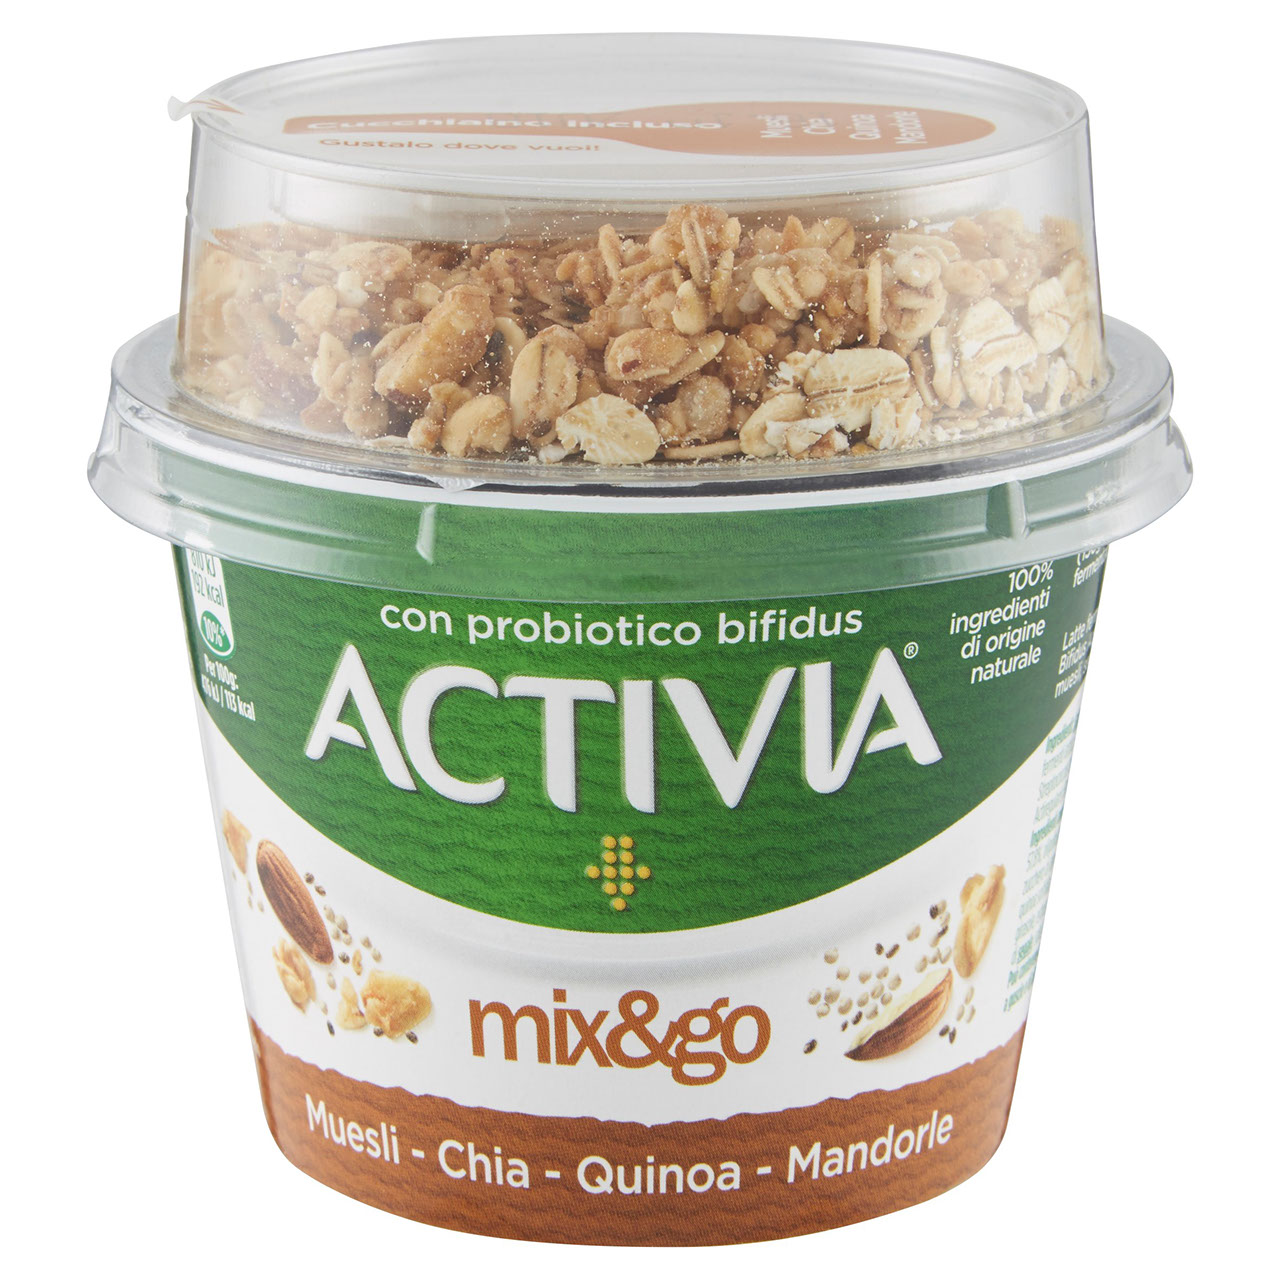 Activia mix&go Muesli - Chia - Quinoa - Mandorle 170 g